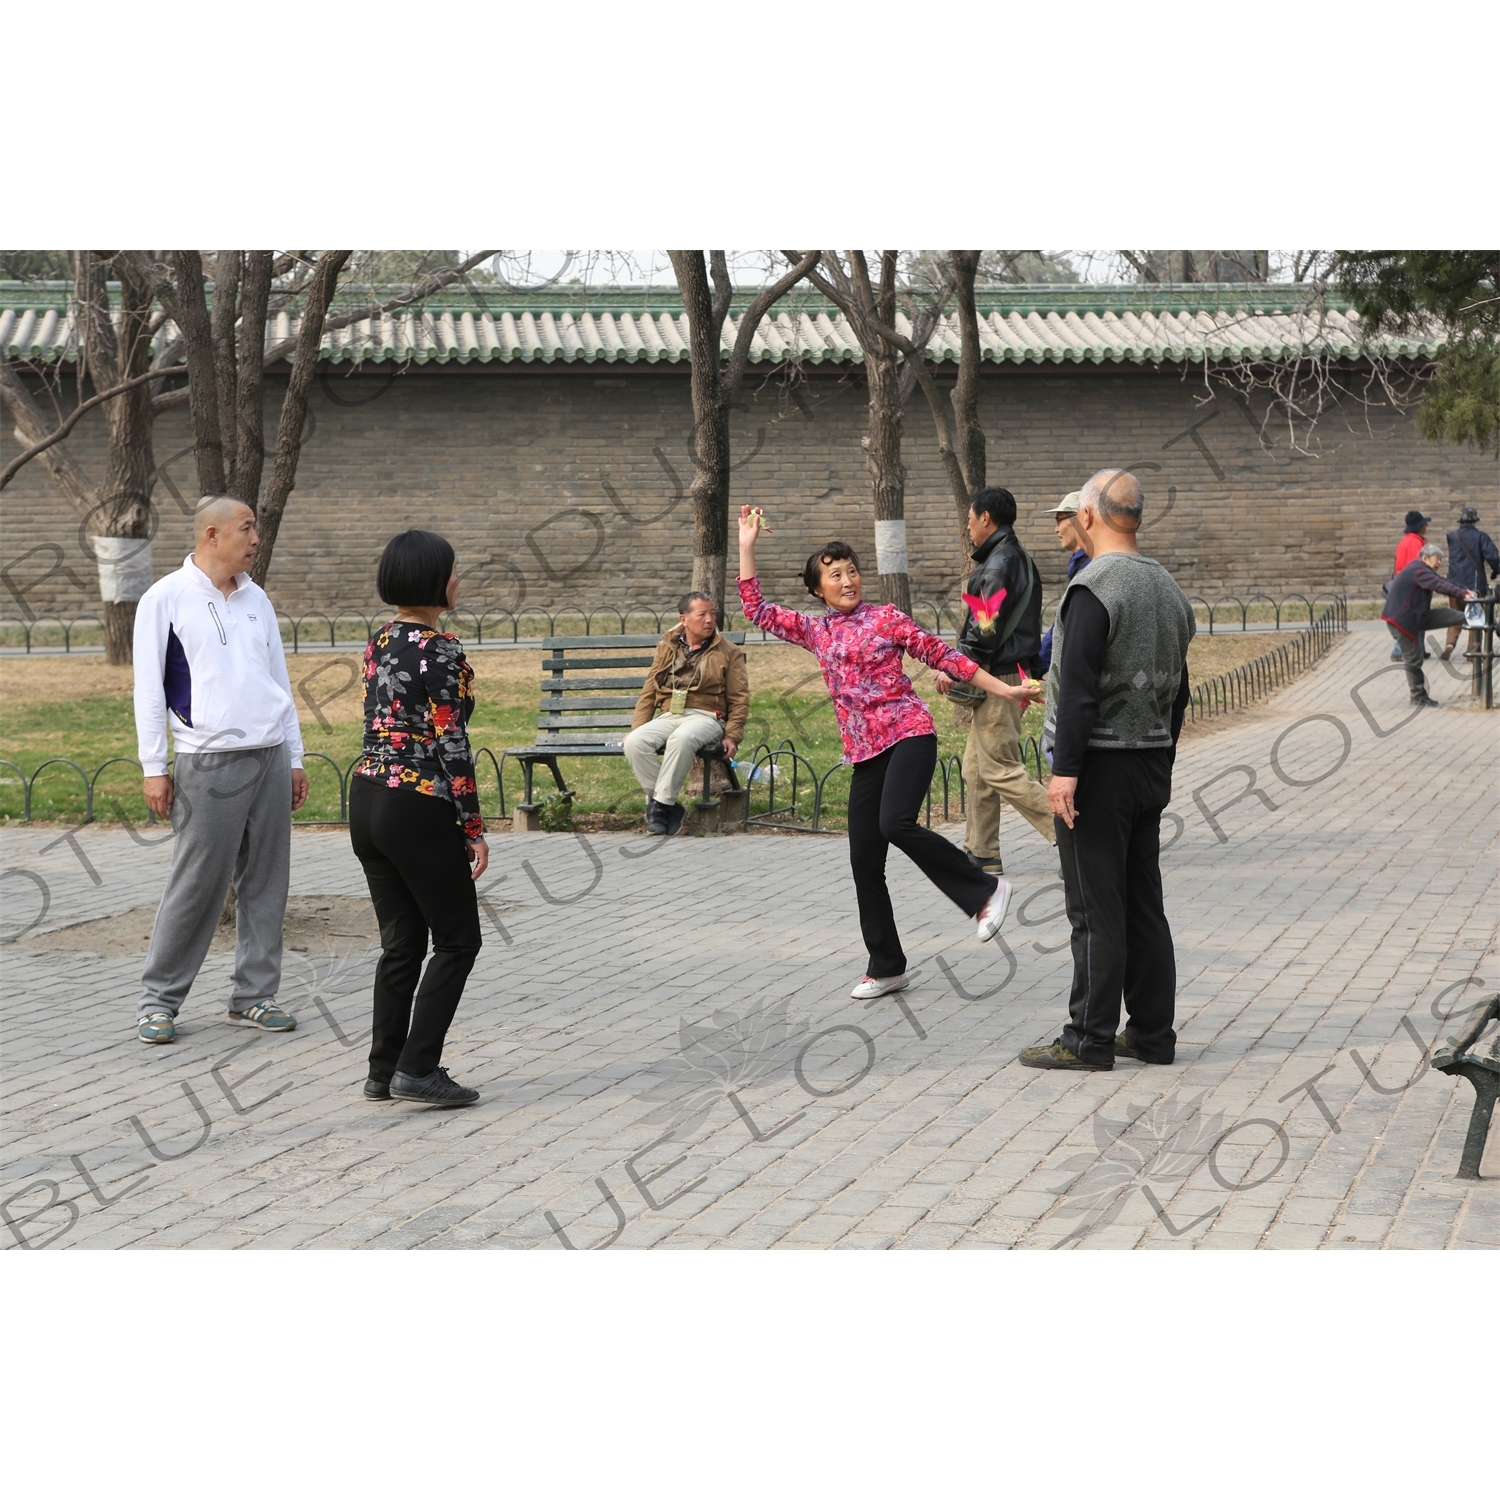 People Playing Shuttlecock (Jianzi/Ti Jianzi/Jianqiu) near the North Gate of the Temple of Heaven (Tiantan) in Beijing